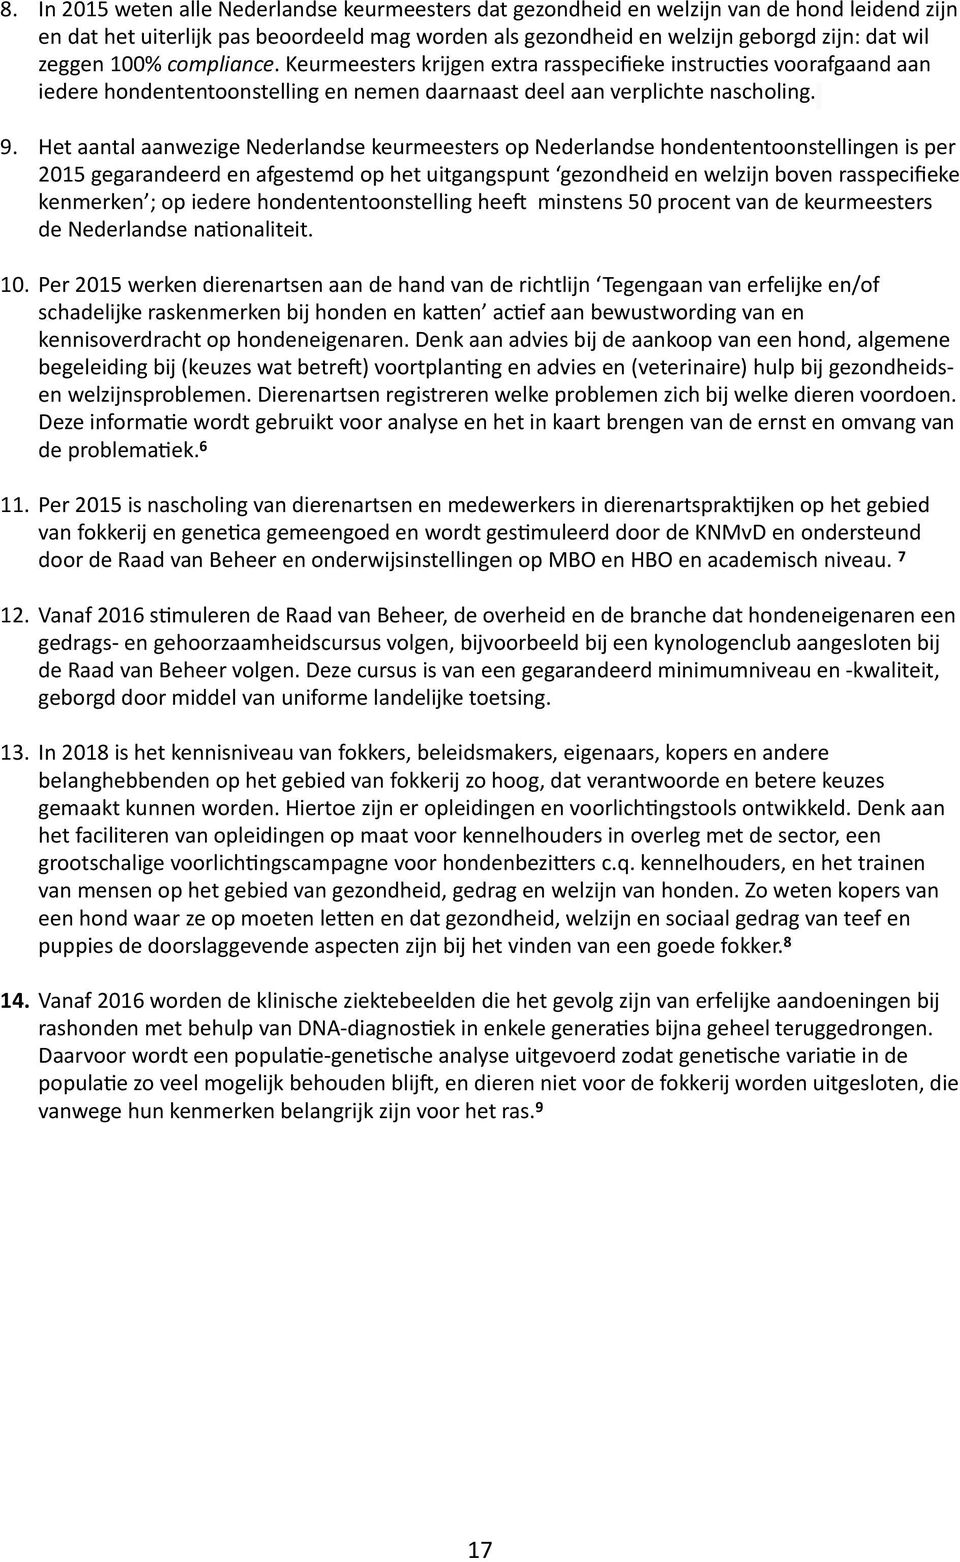 Het aantal aanwezige Nederlandse keurmeesters op Nederlandse hondententoonstellingen is per 2015 gegarandeerd en afgestemd op het uitgangspunt gezondheid en welzijn boven rasspecifieke kenmerken ; op